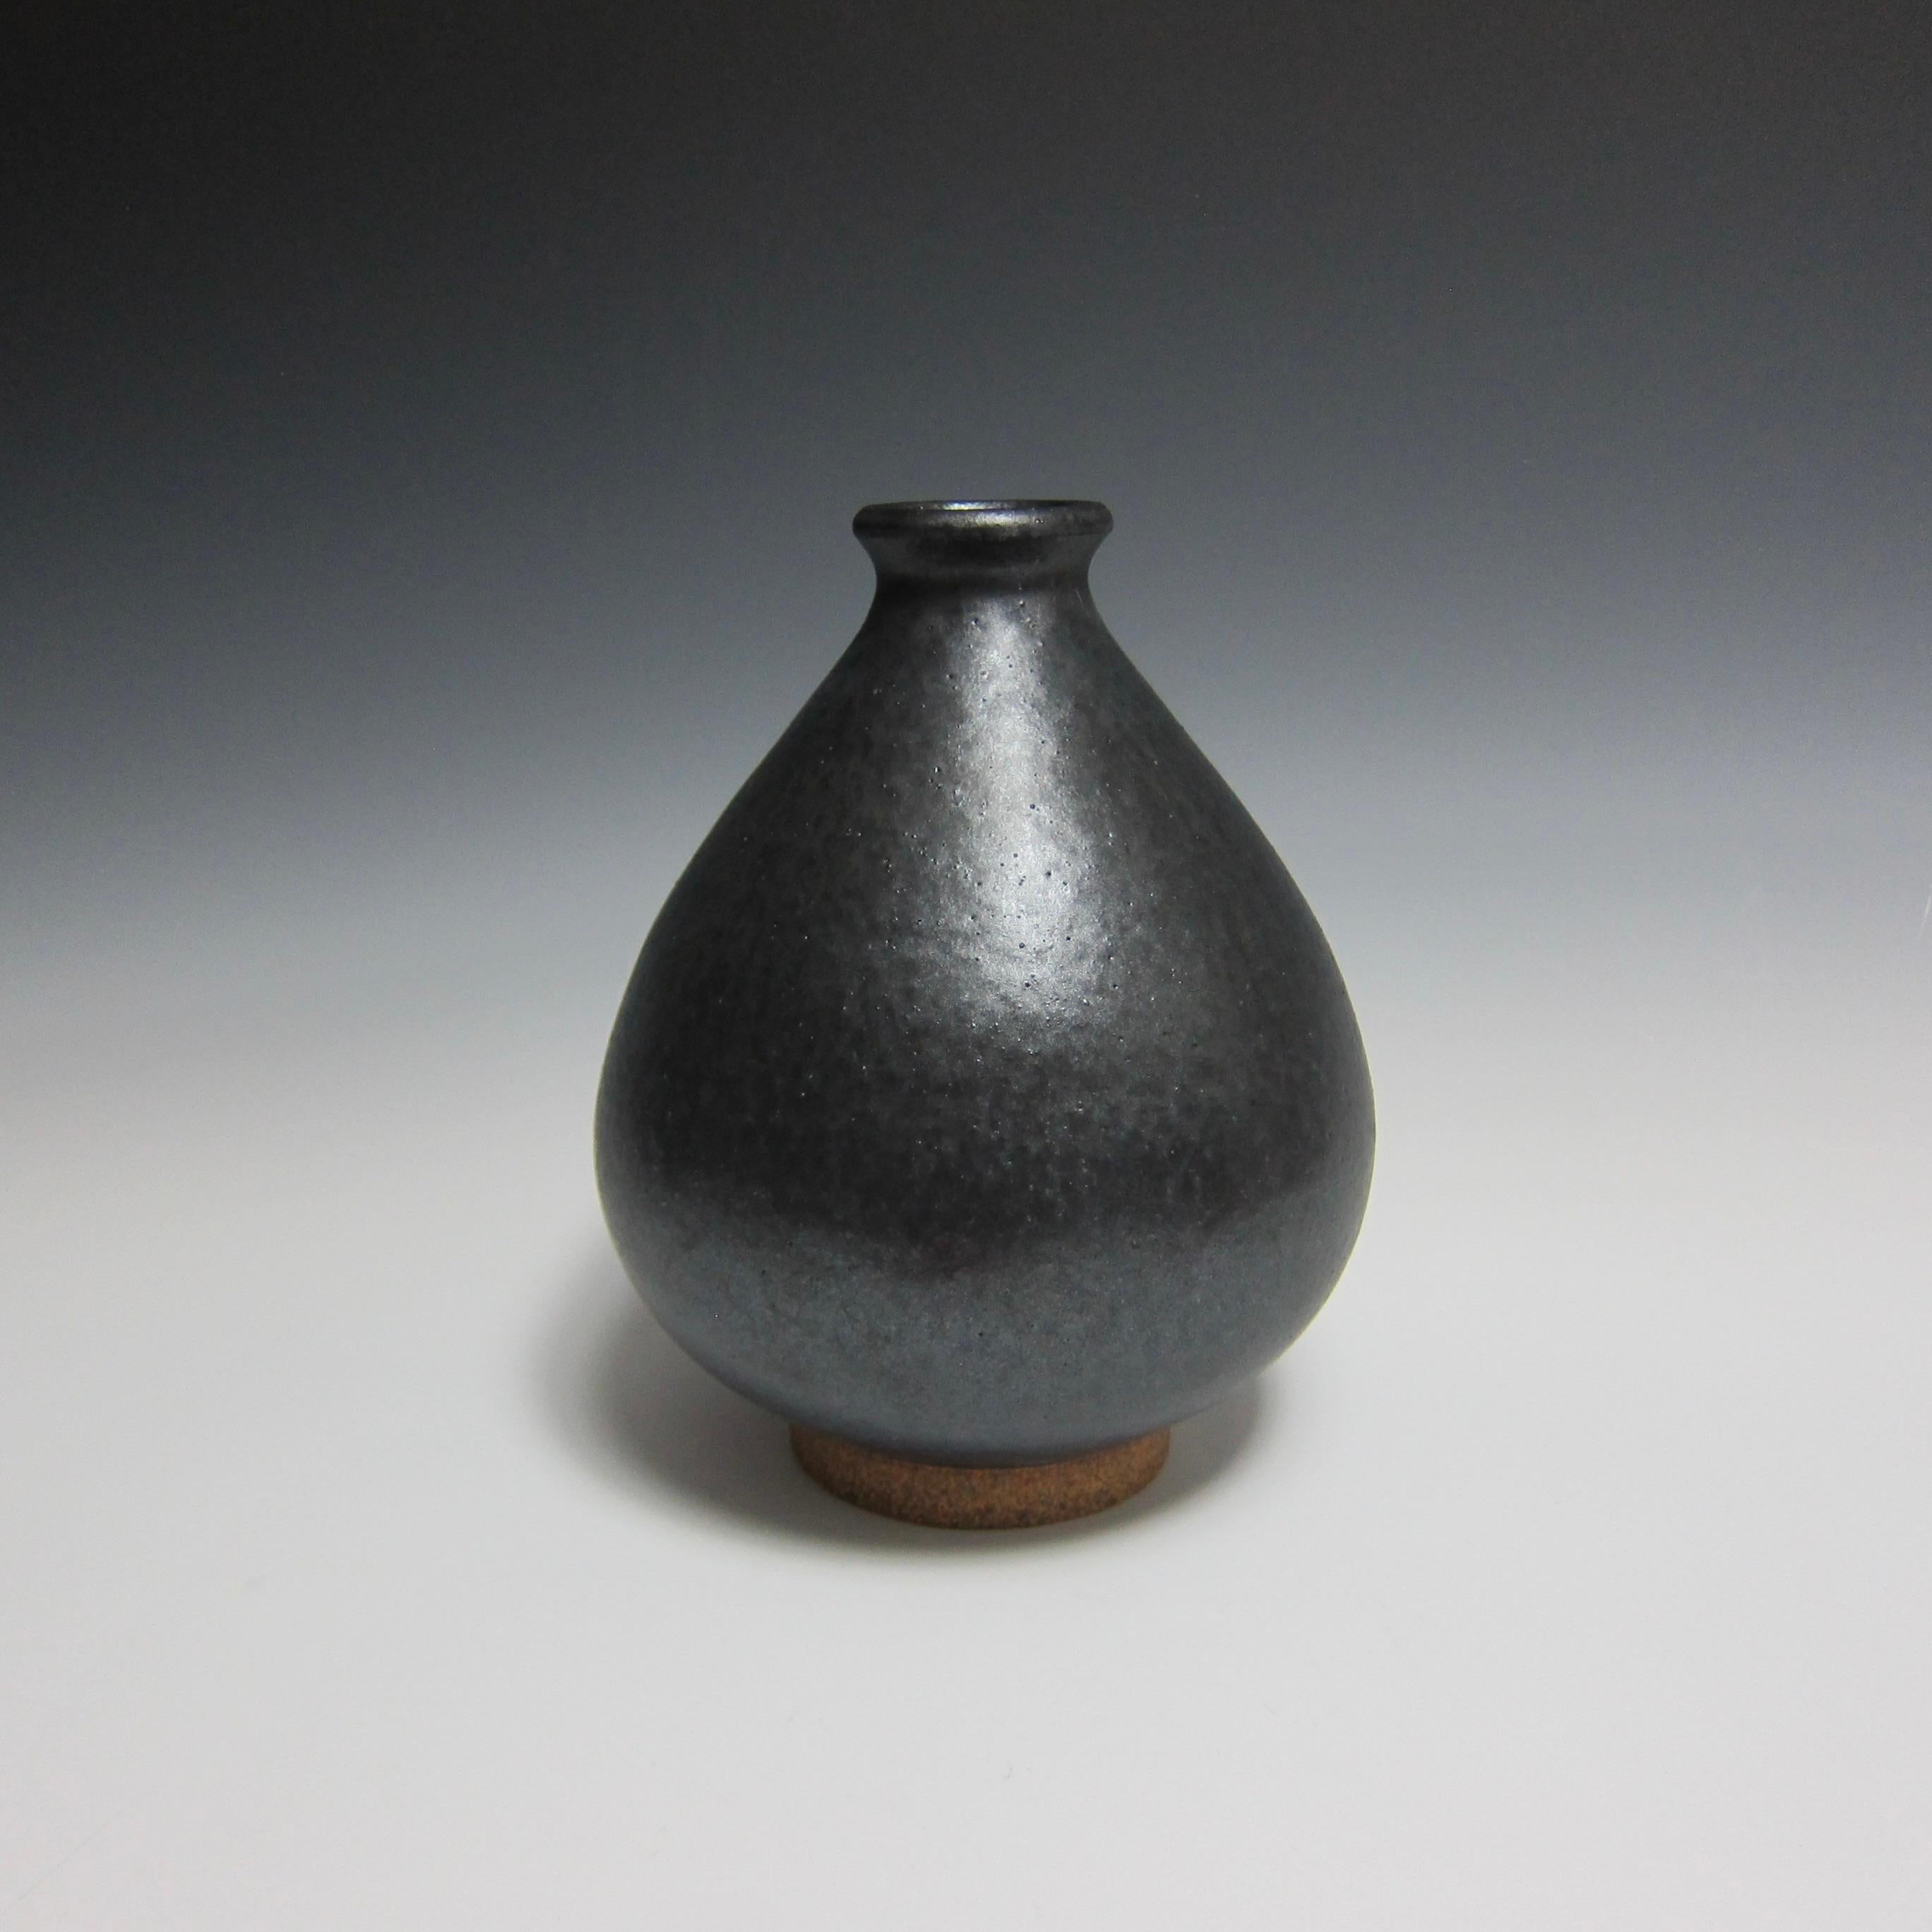 Radgedrehte Keramikvase / Blumenflasche von Jason Fox

Als Teil seiner Flower Bottle Serie hat sich der amerikanische Keramikkünstler Jason Fox von der gleichnamigen antiken koreanischen Silhouette inspirieren lassen, um eine Vase zu schaffen, die